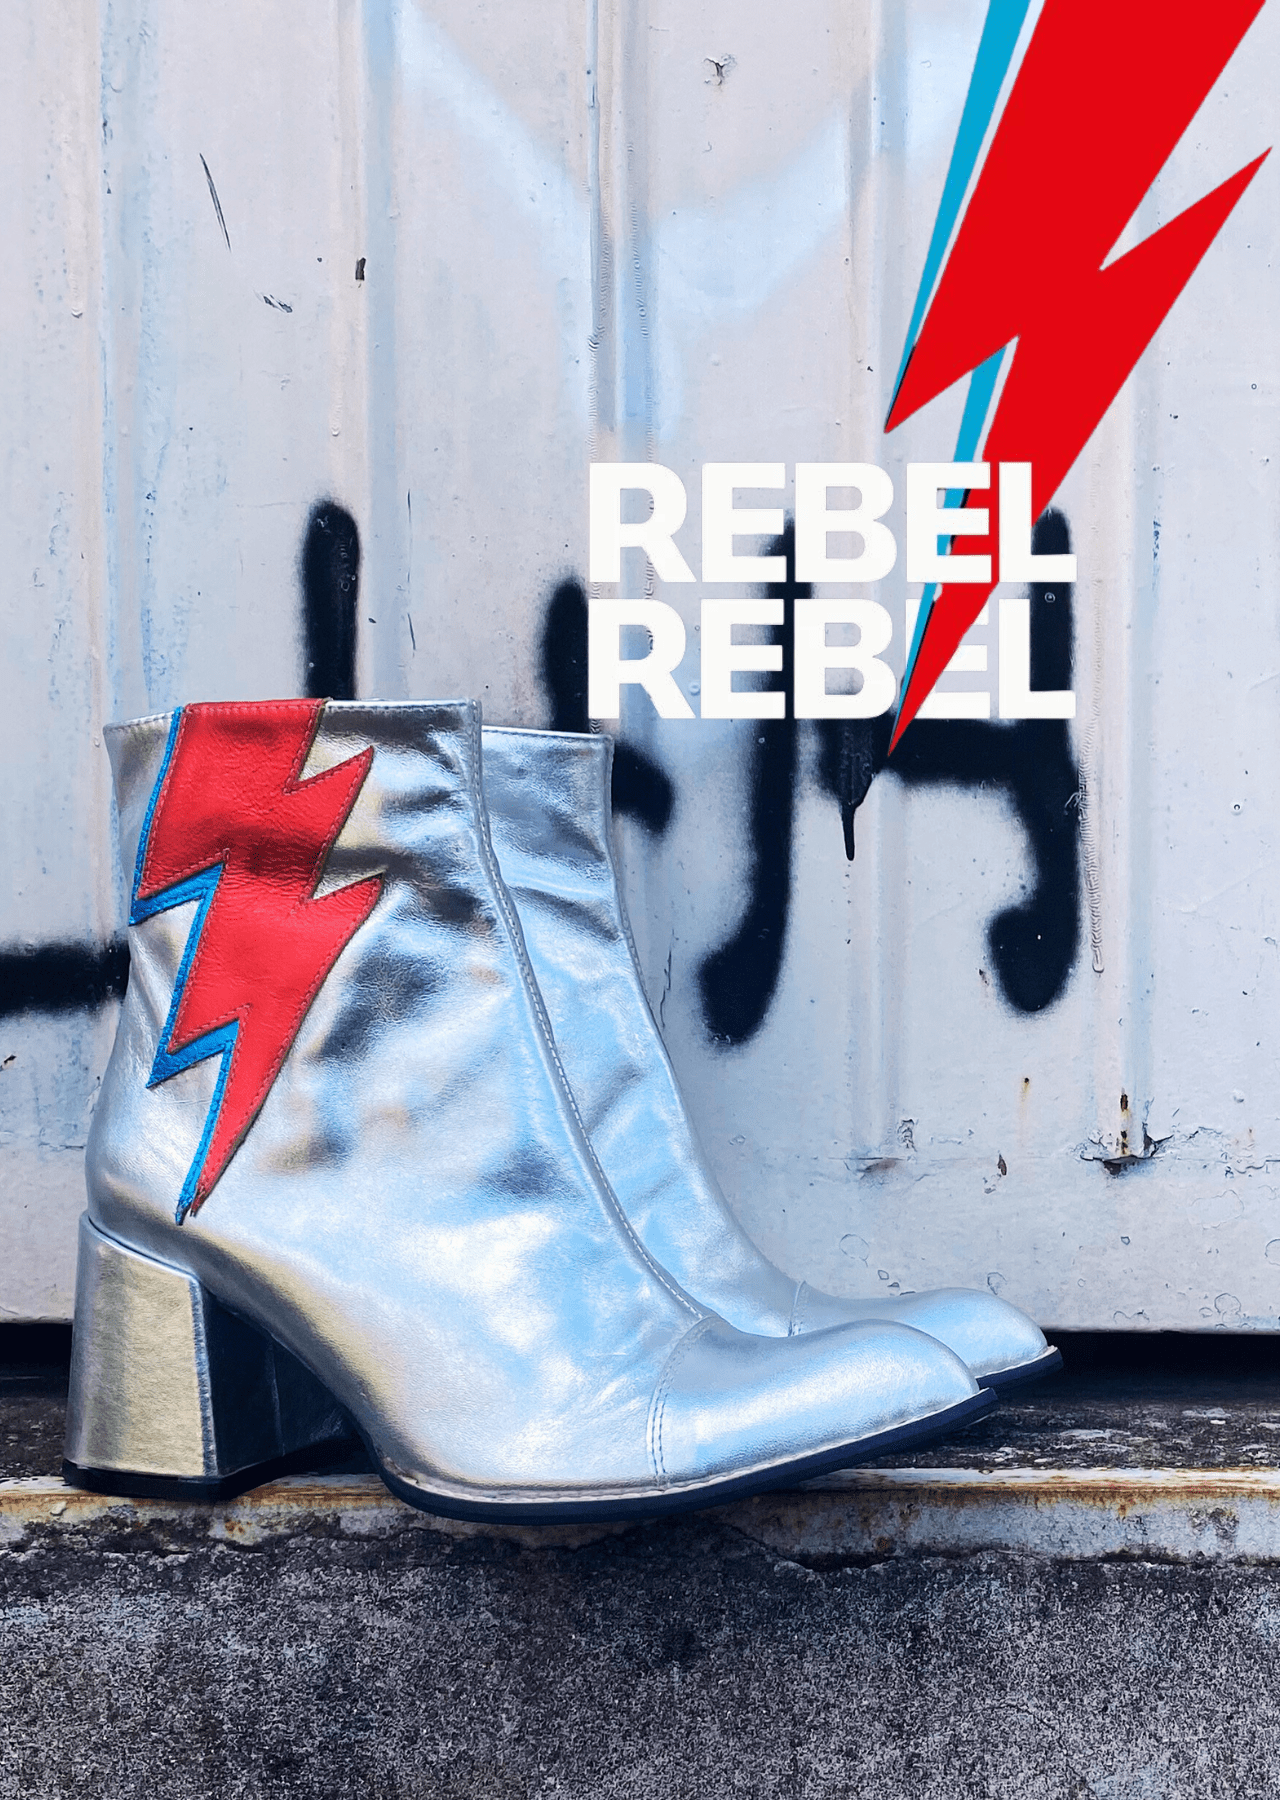 rebel-rebel-mob